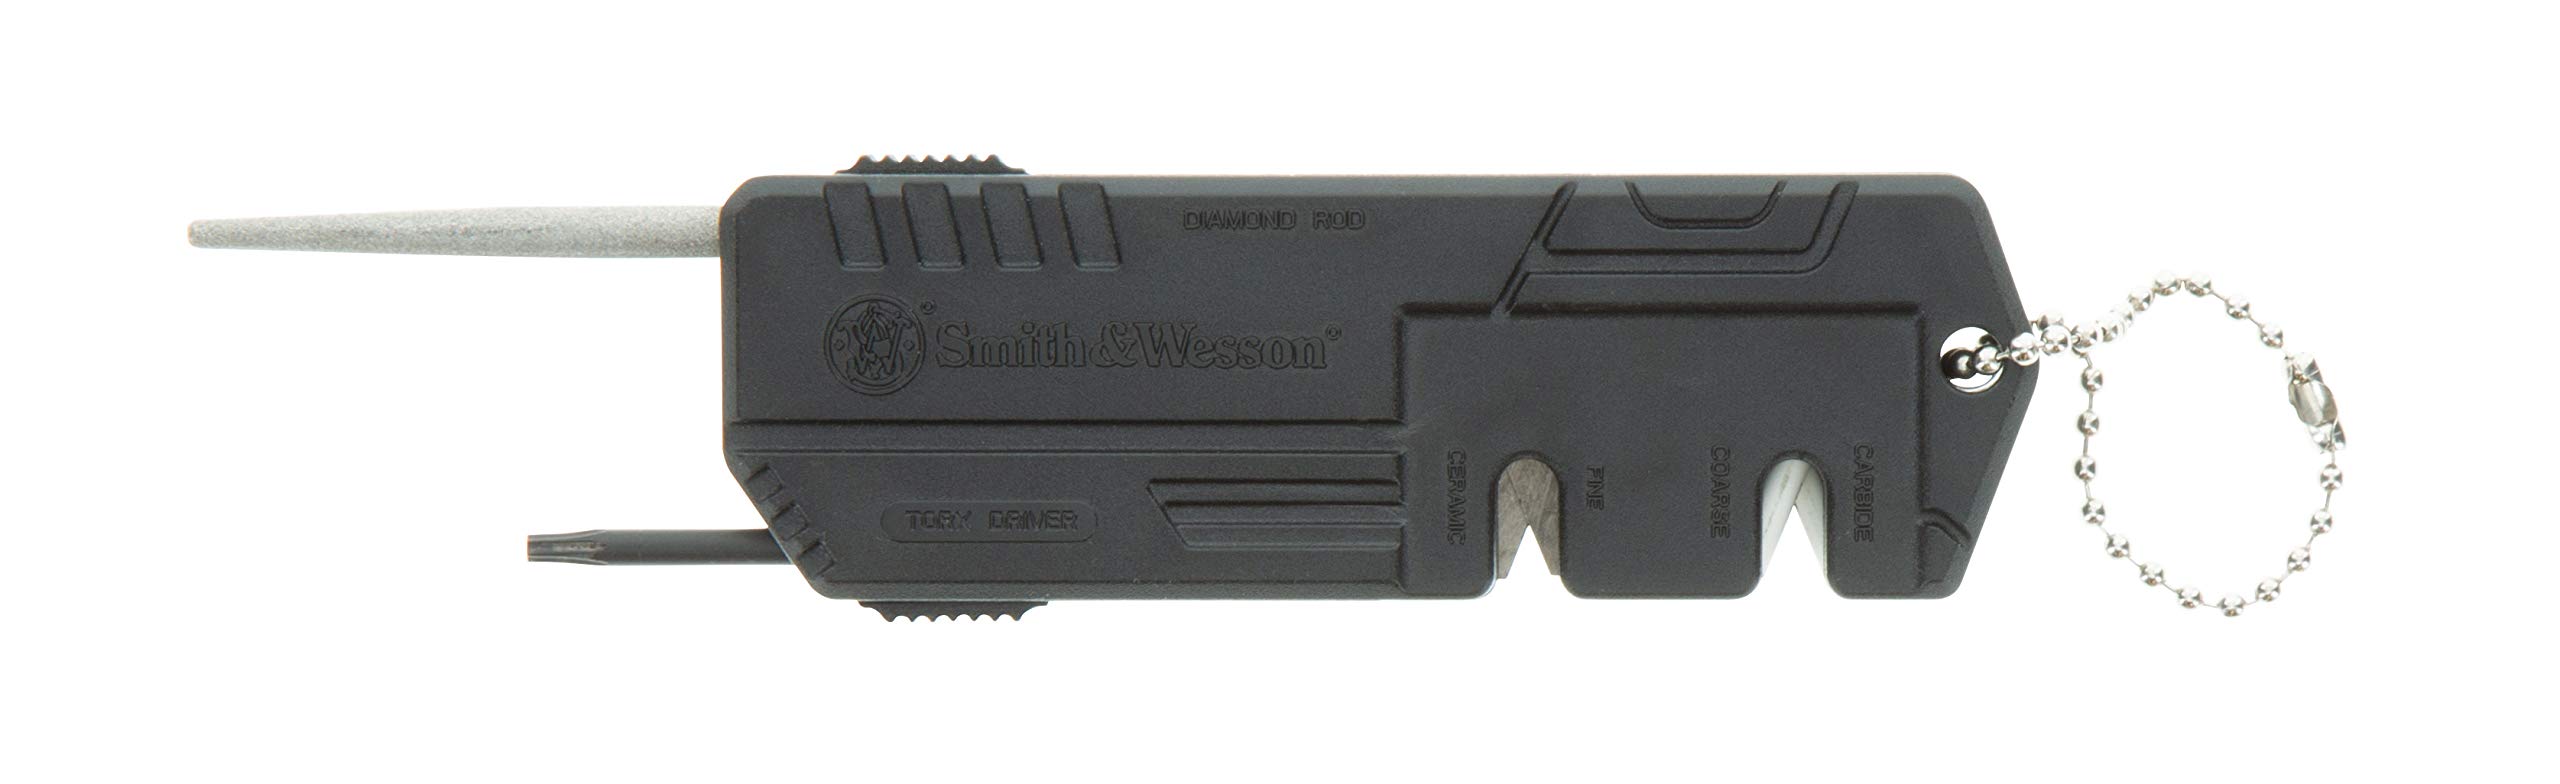 Smith & Wesson Messerschärfer mit feinen, groben Seiten, Schraubendreher, robuste Konstruktion und Schlüsselanhänger für Überleben, Jagd, Outdoor und EDC, schwarz